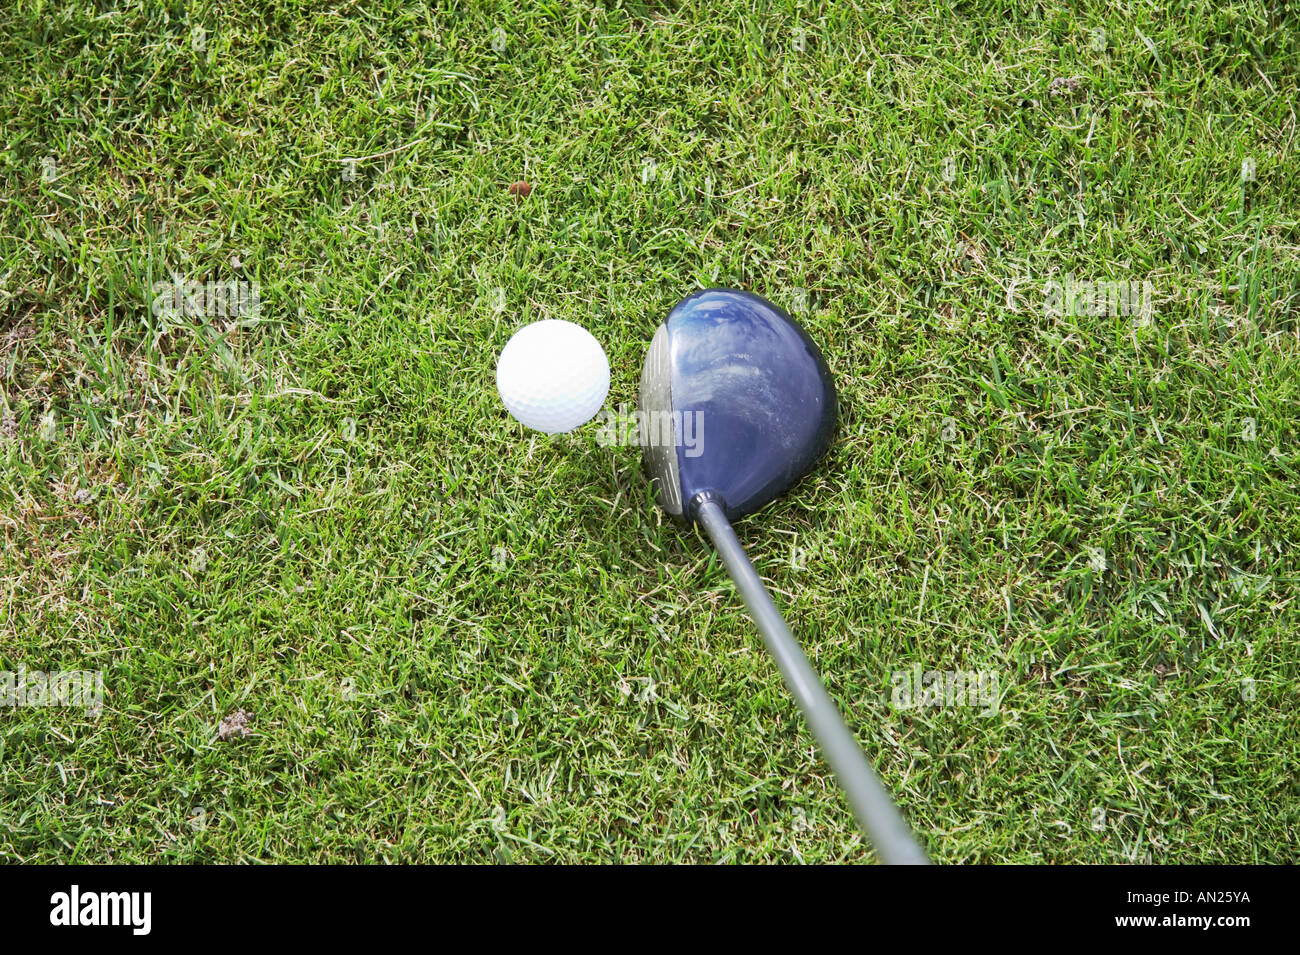 Tee off e la guida del golfball Foto Stock